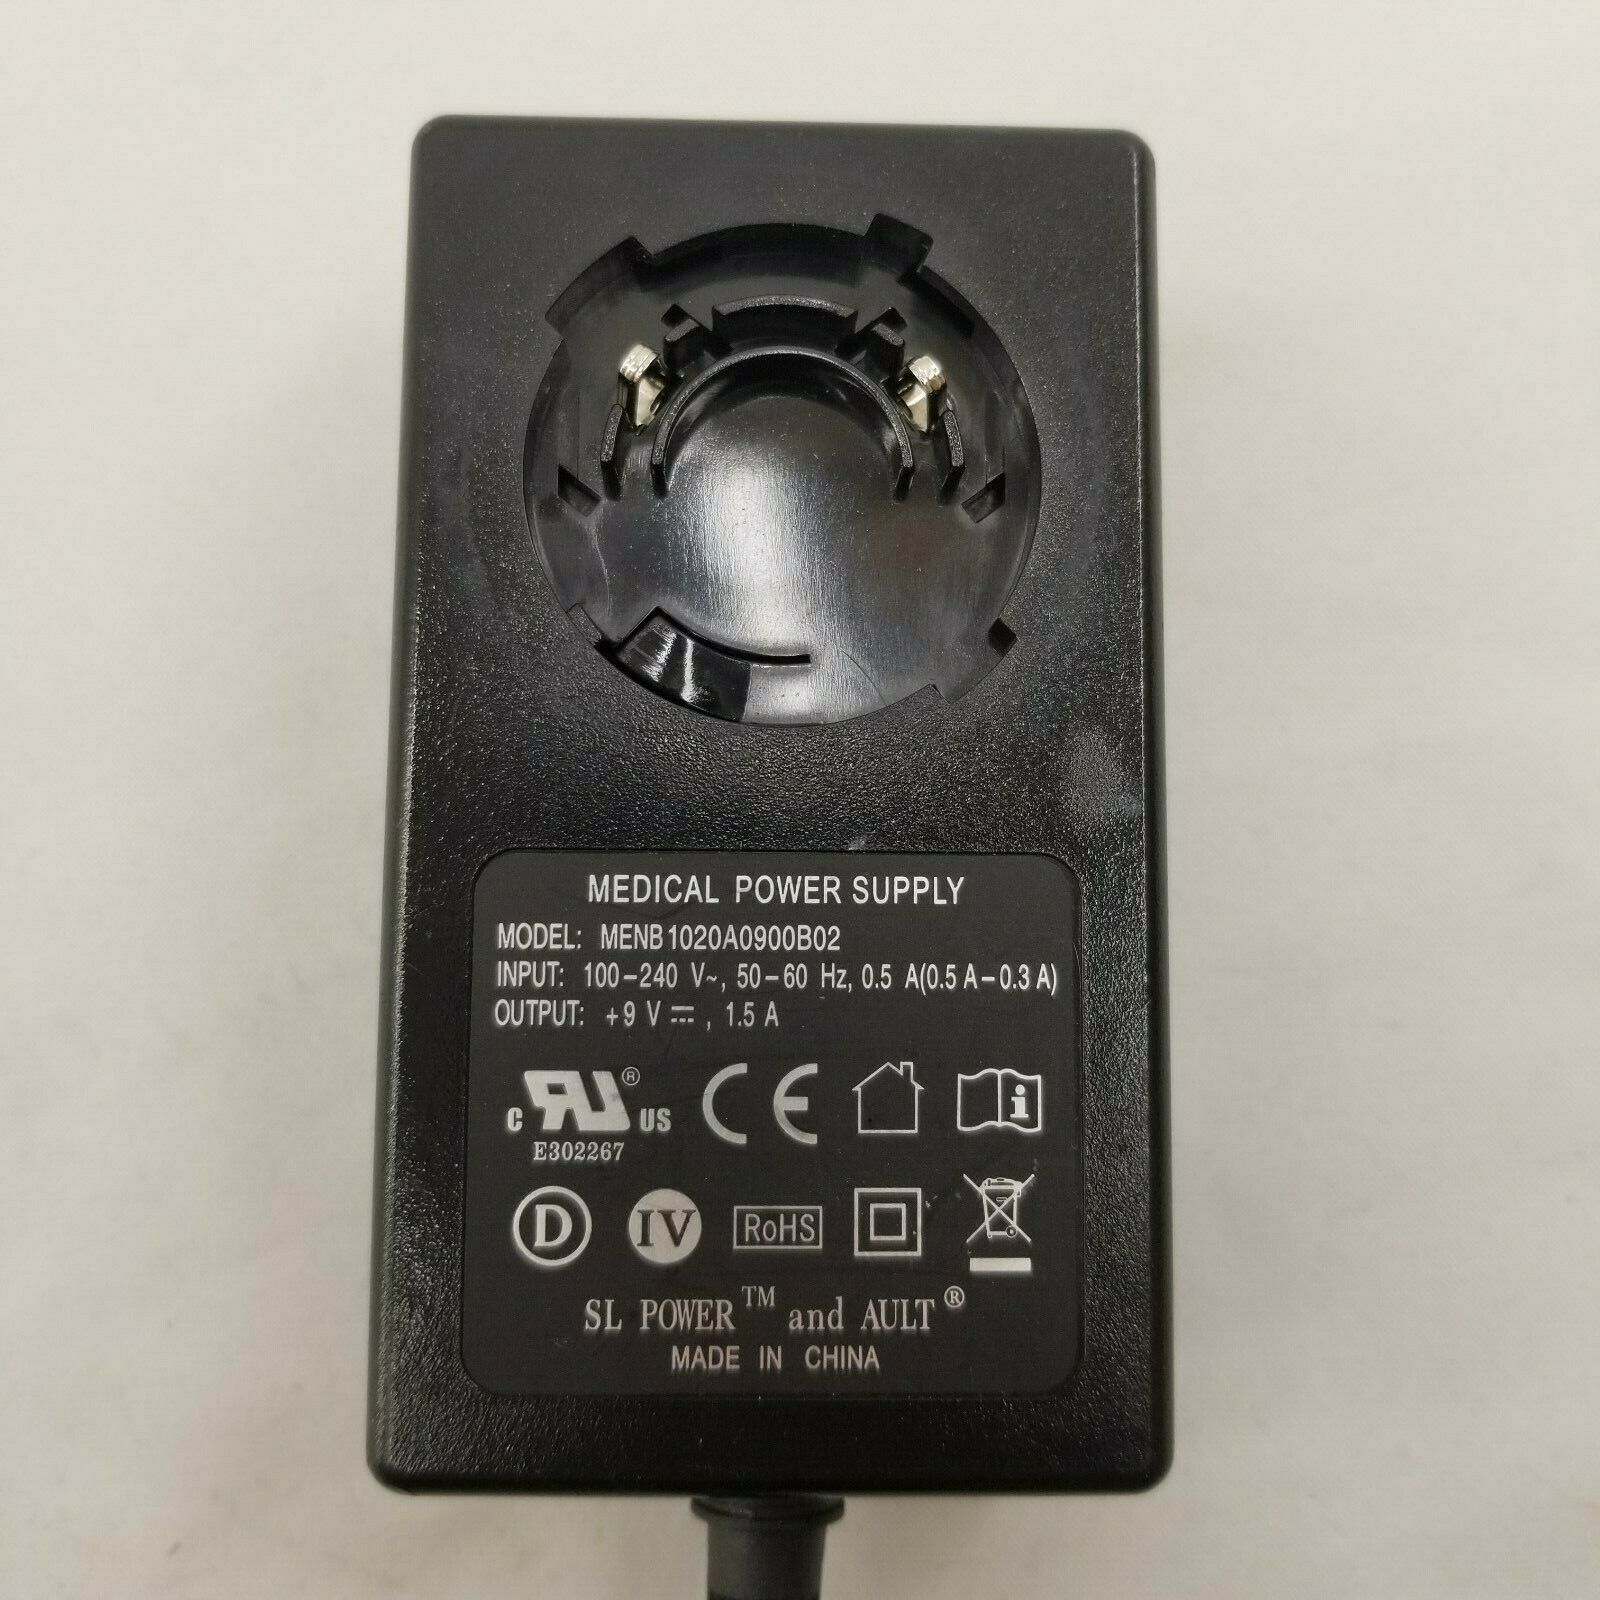 New SL Power 4-Pin MENB1020A0900B02 9V 1.5A Medical Power Supply - Click Image to Close